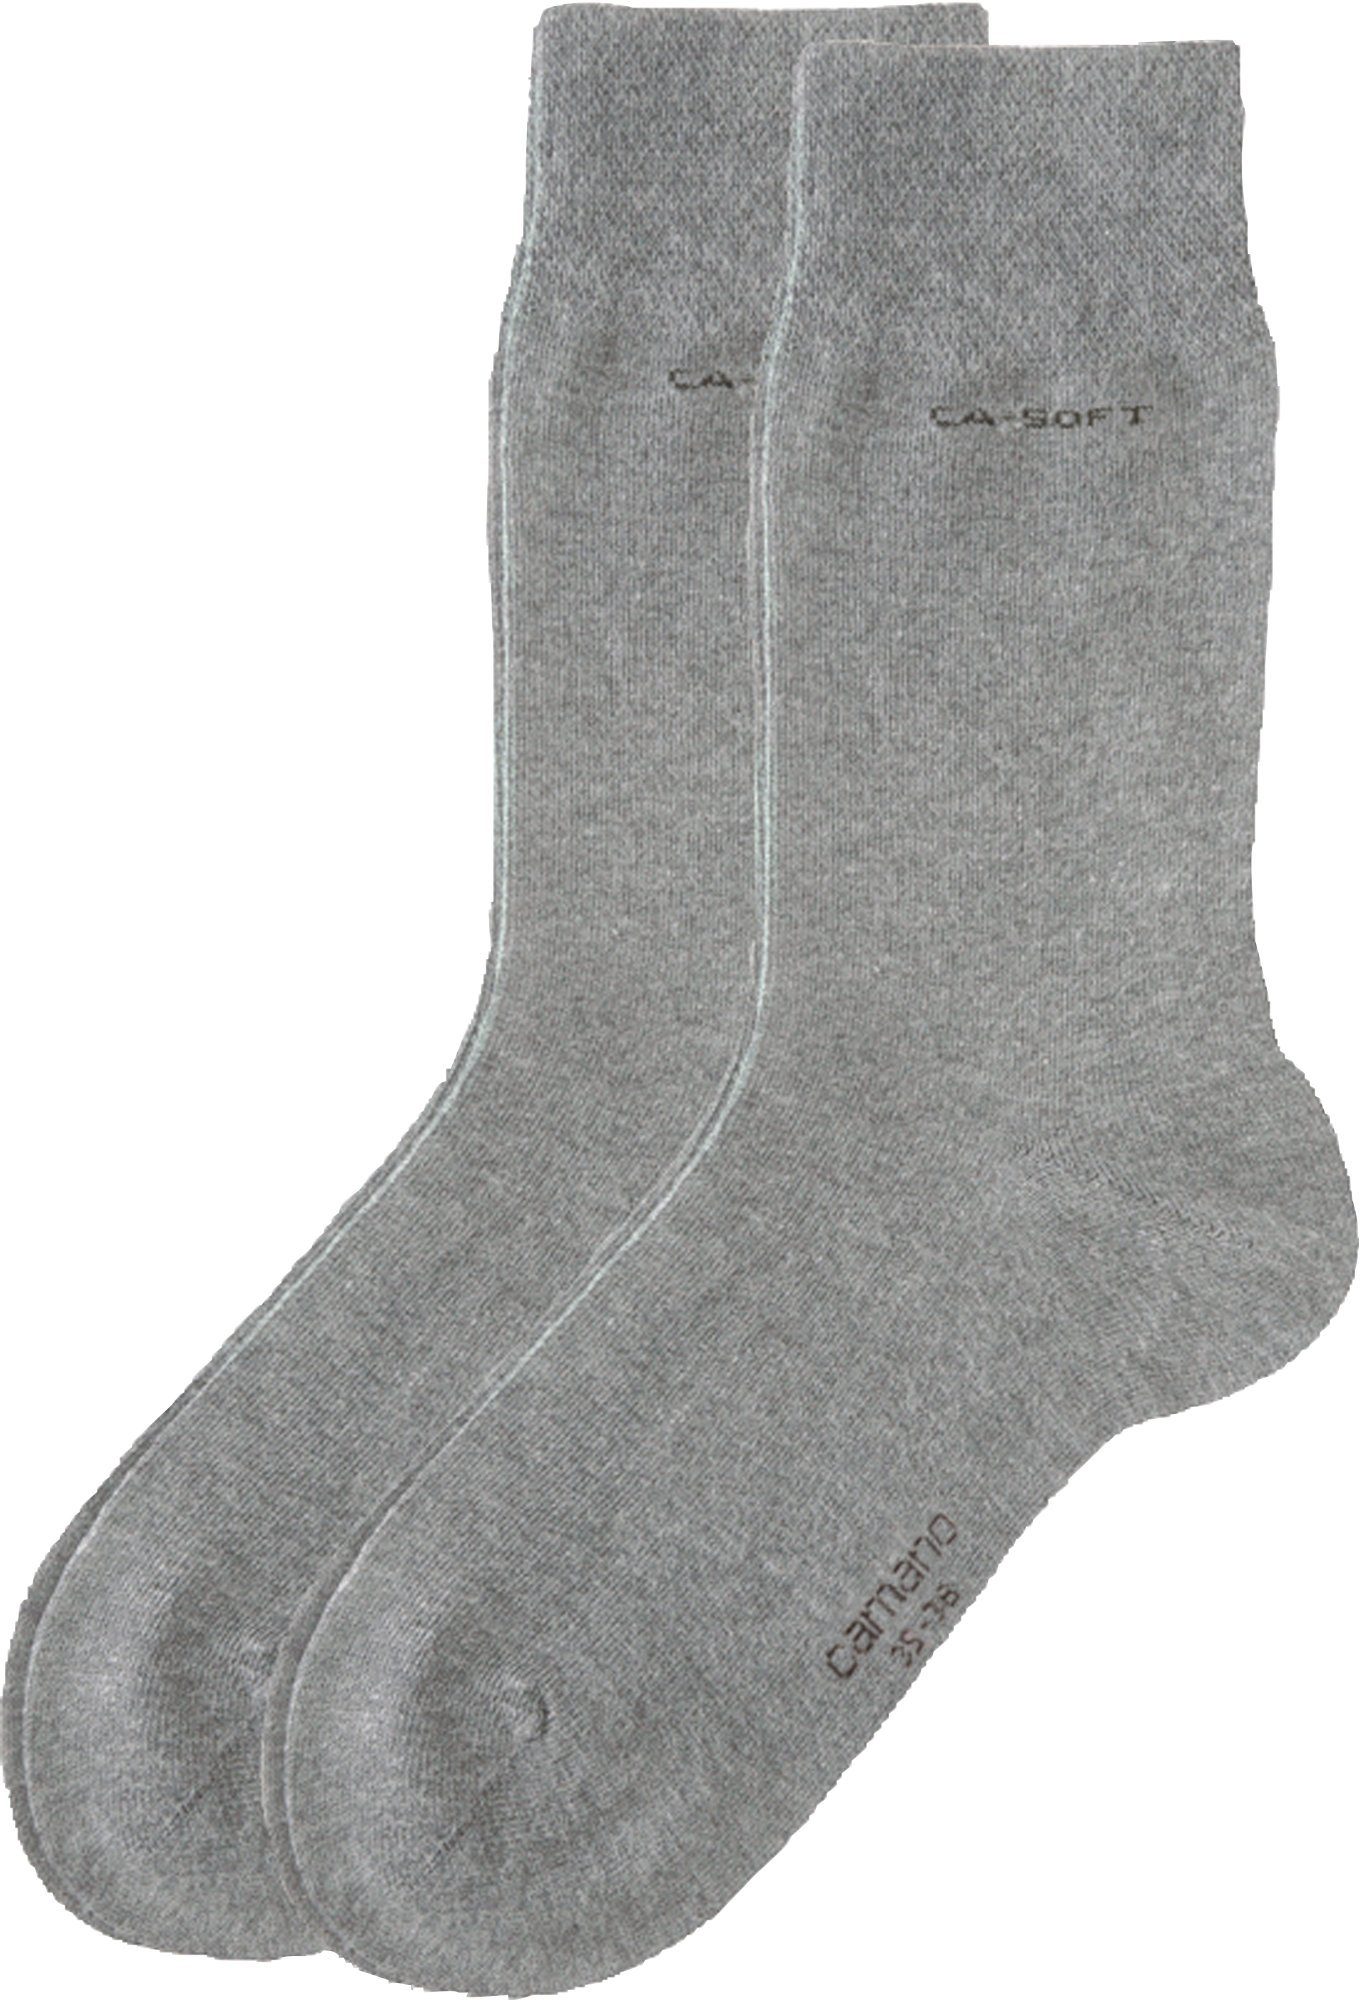 2 grau Camano Softbund Unisex-Socken mit Uni Paar Socken